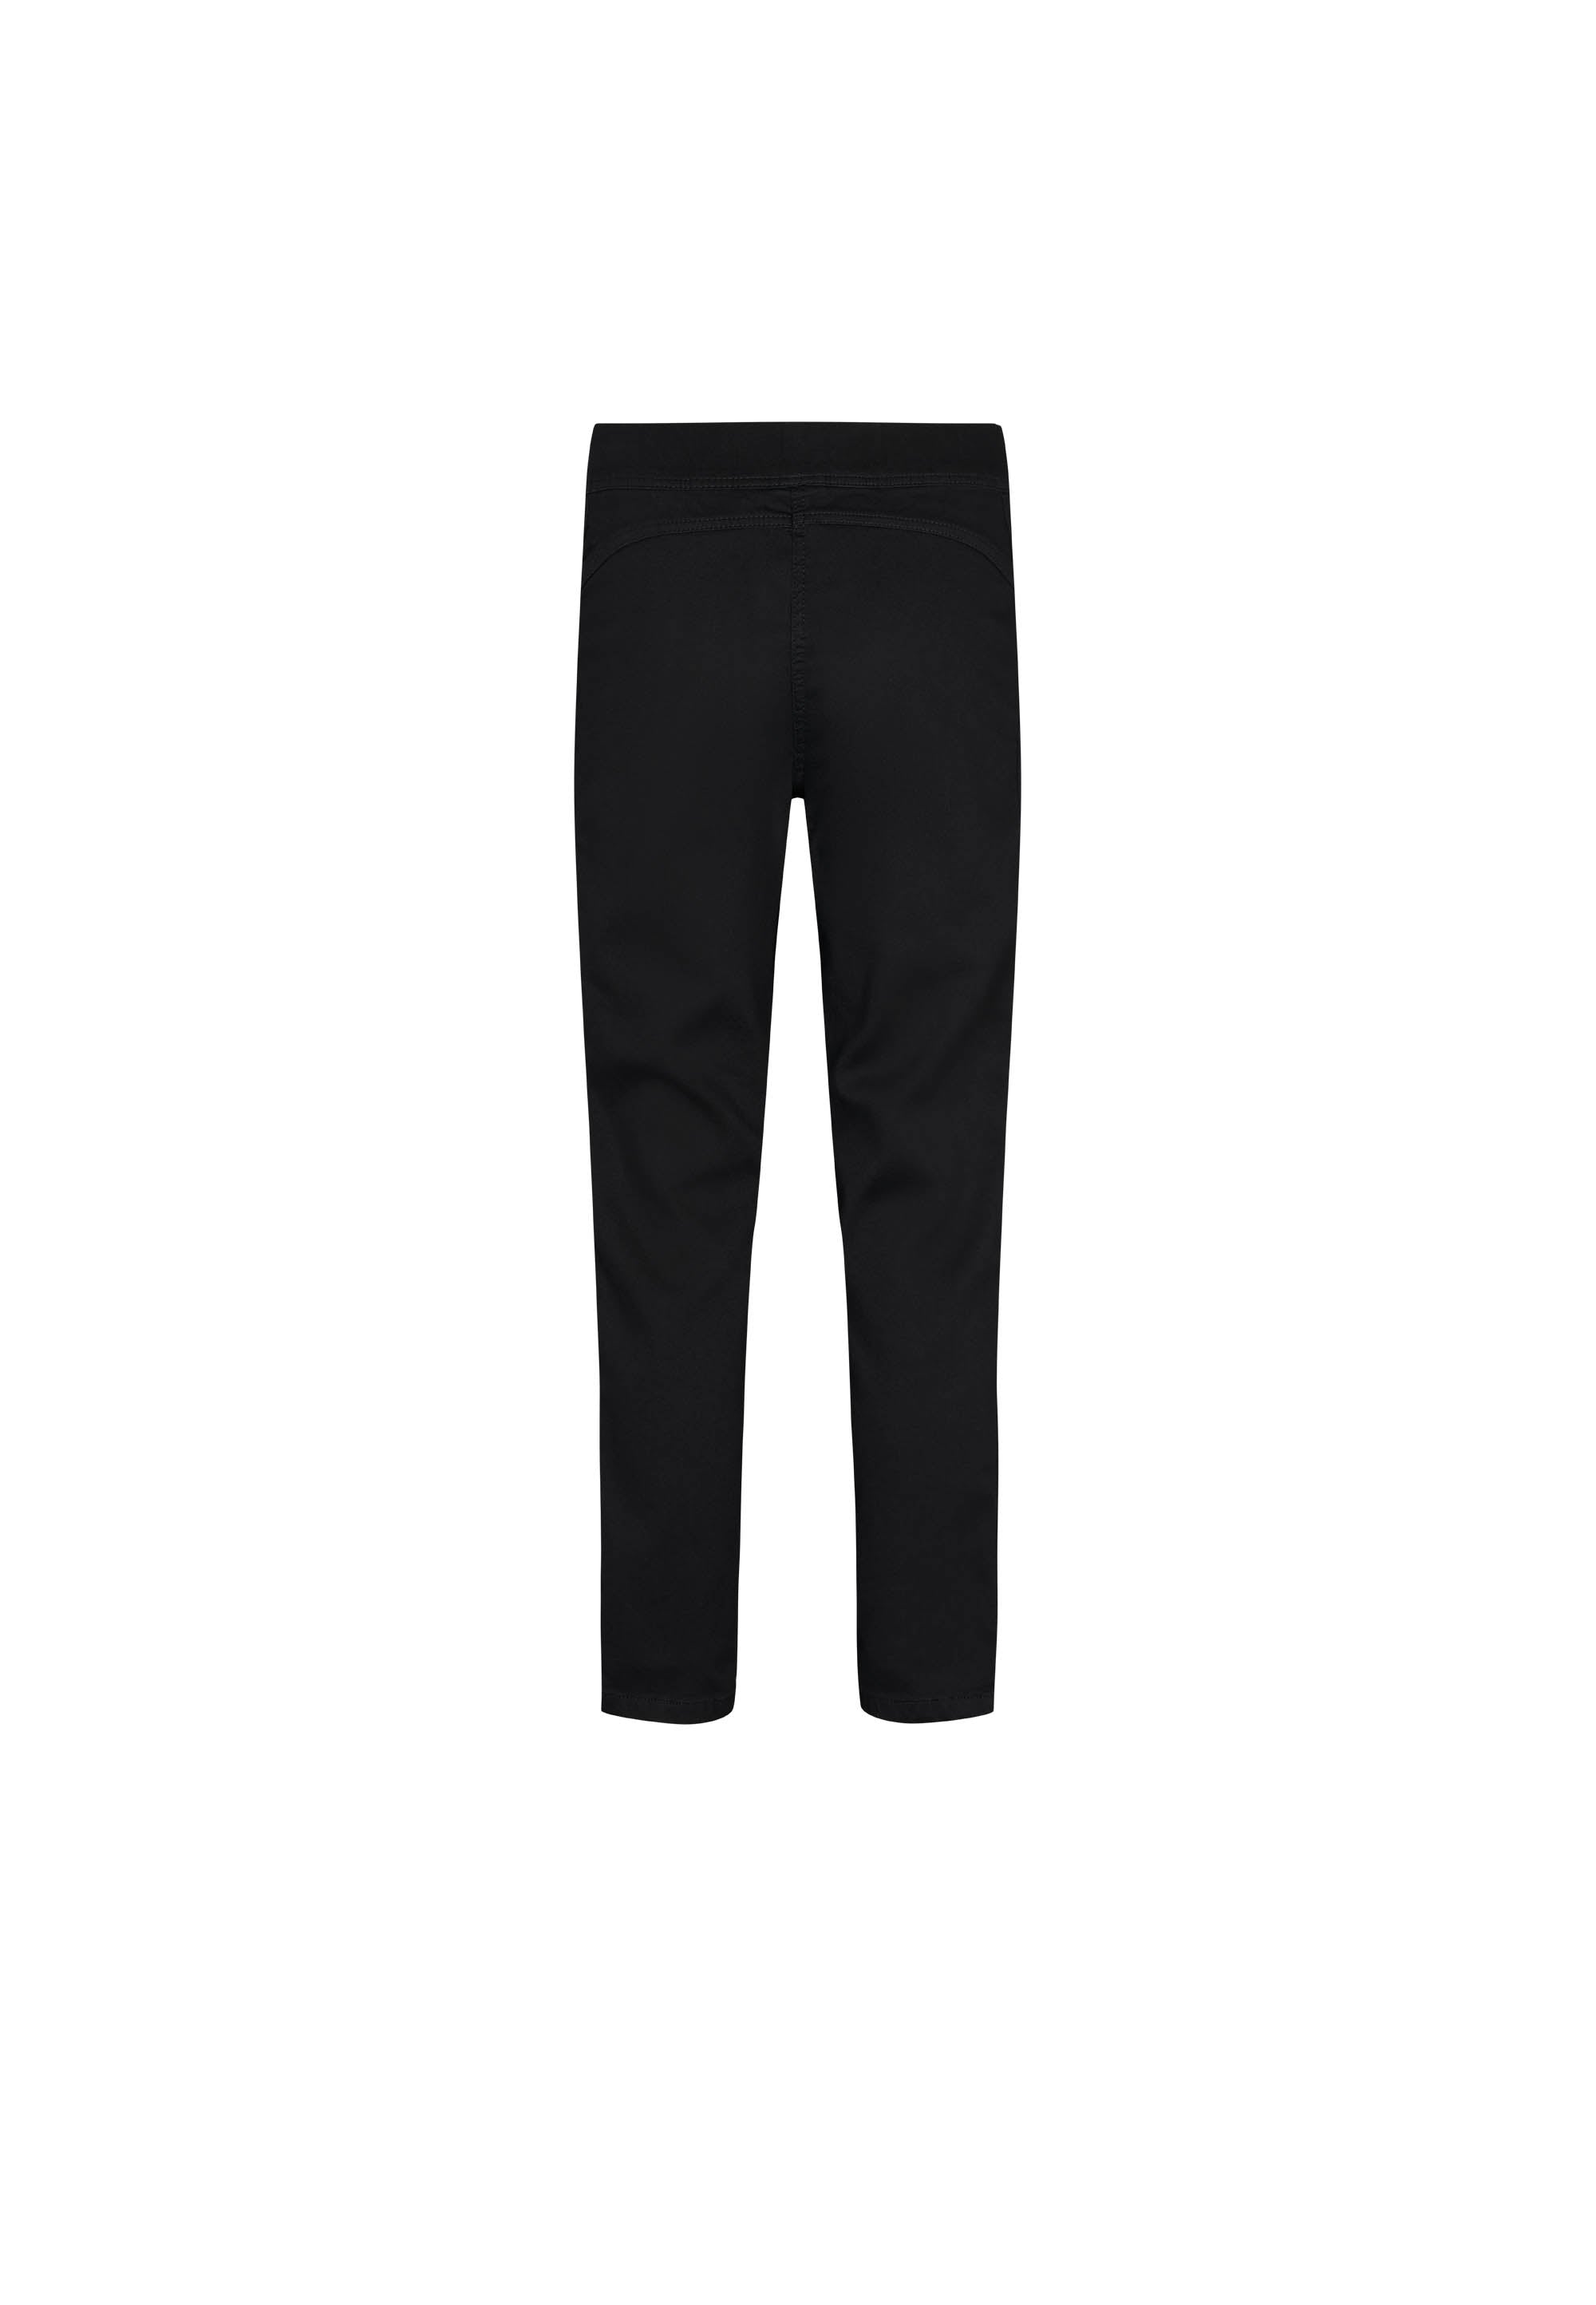 LAURIE Serene Regular - Extra Short Length Trousers REGULAR 99000 Black